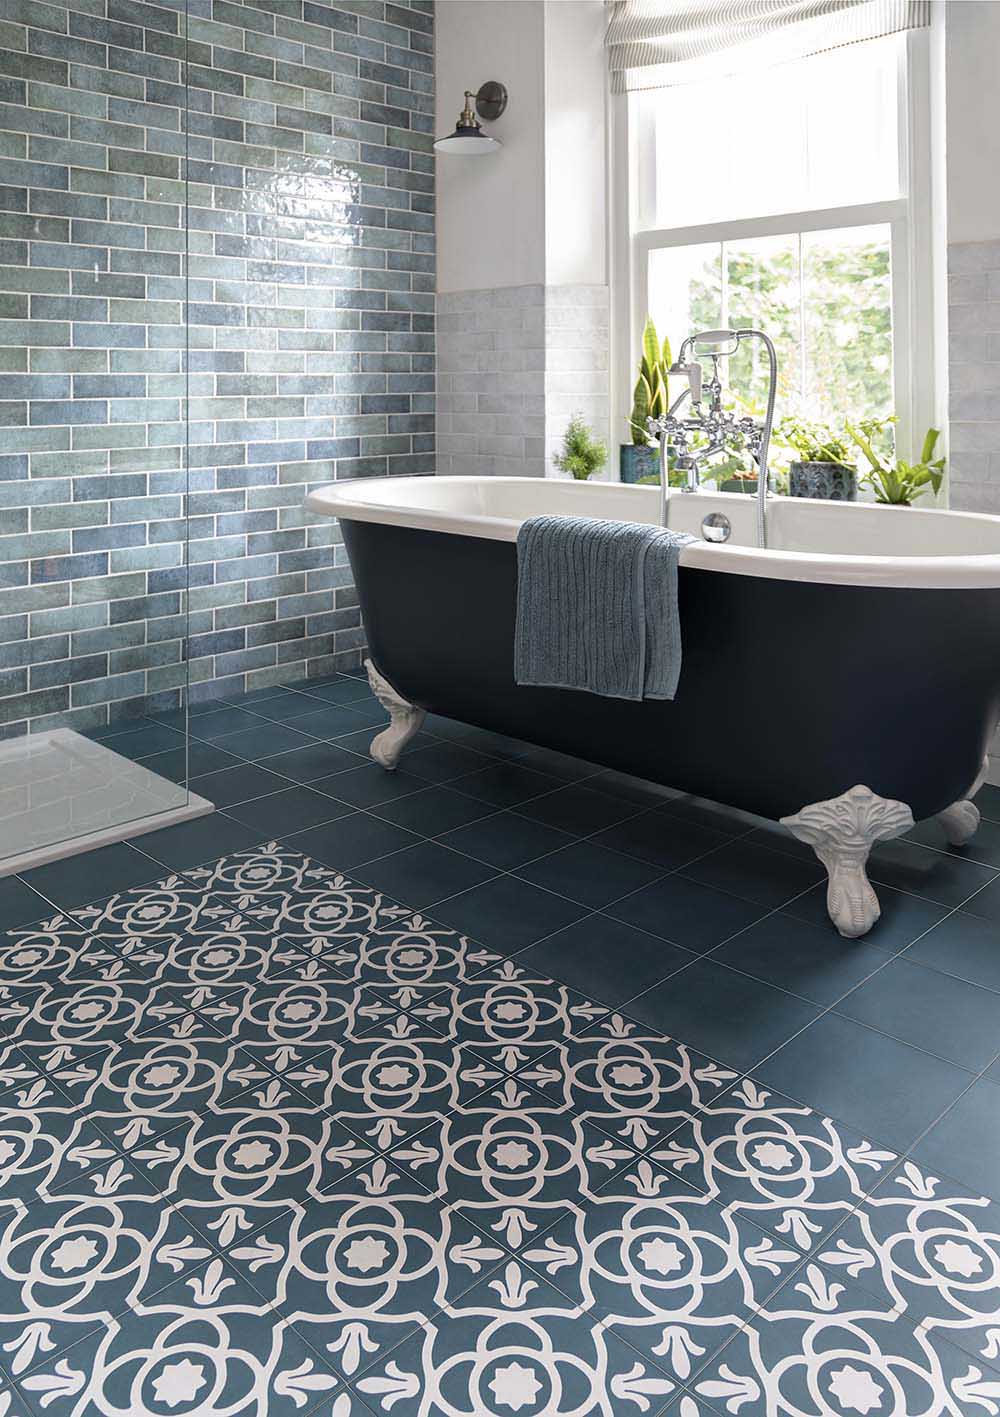 Aqua patterned bathroom tiles